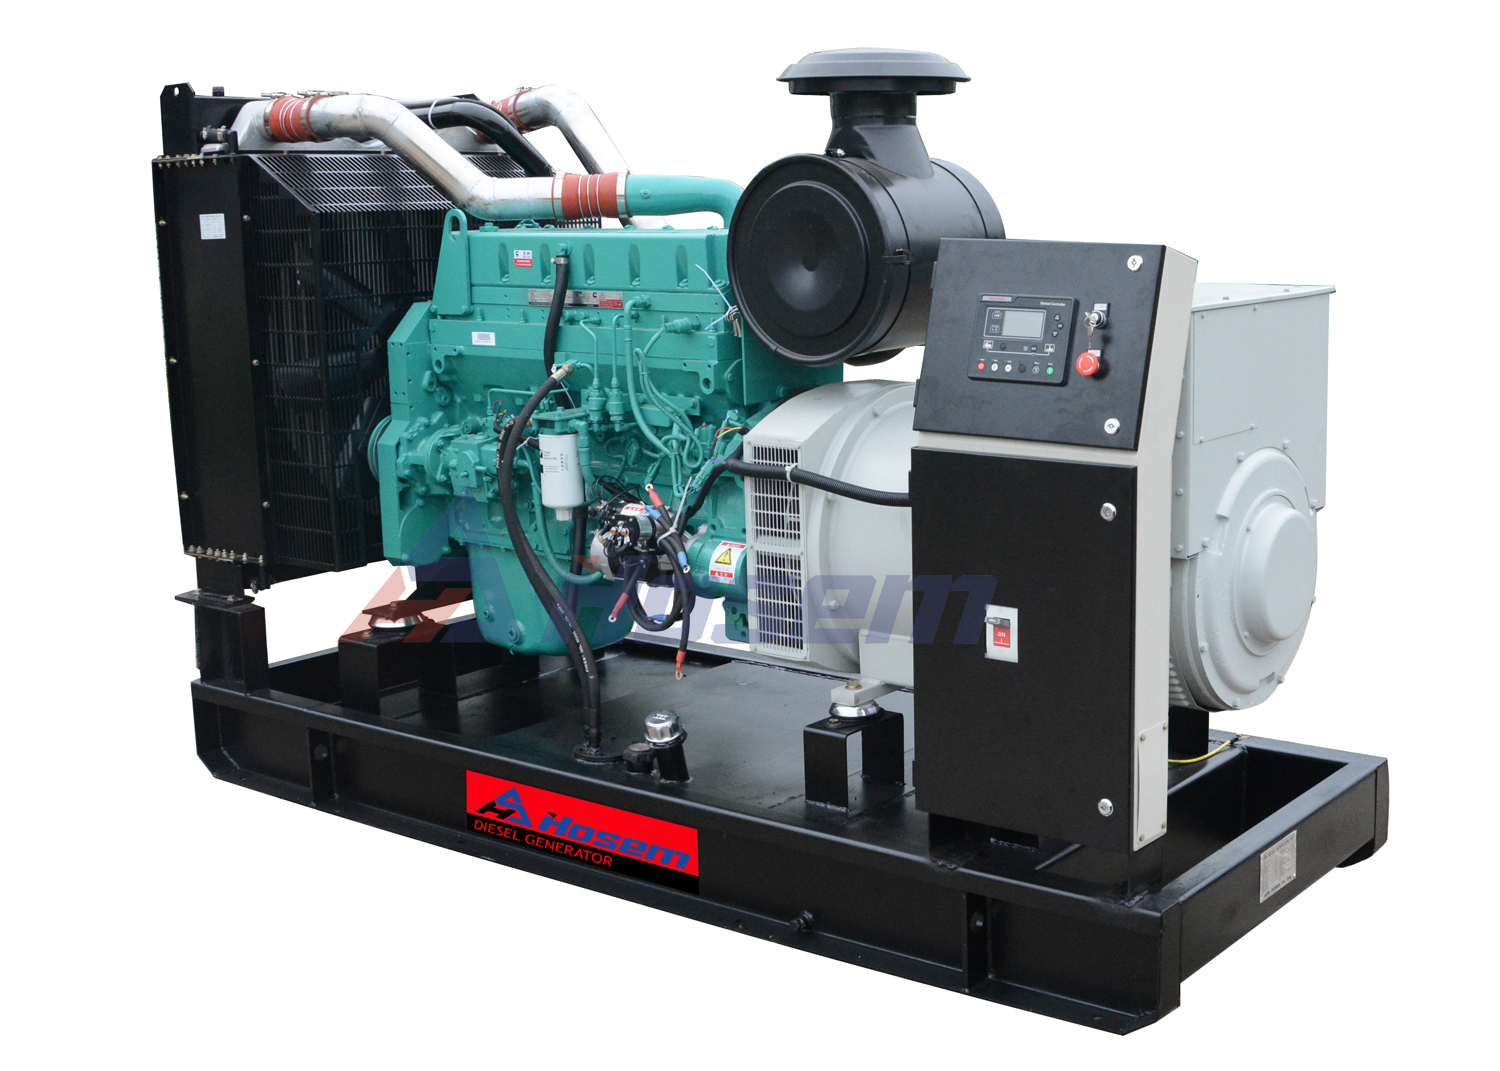 Cummins Generator Set 350kVA Powered by NTA855-G4 Diesel Engine For Industrial 